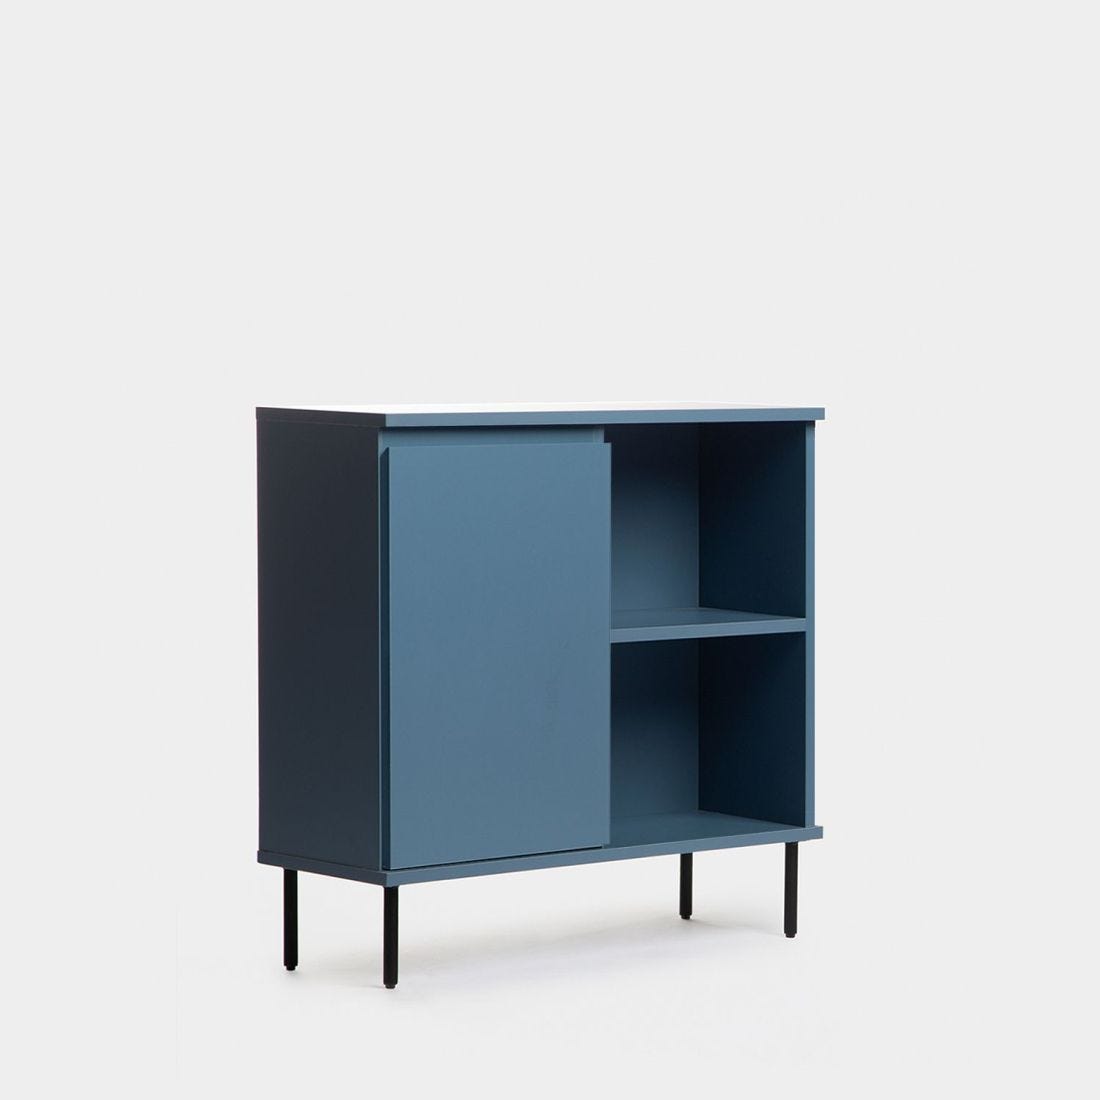 Mueble recibidor con cajón de estilo industrial azul Esben